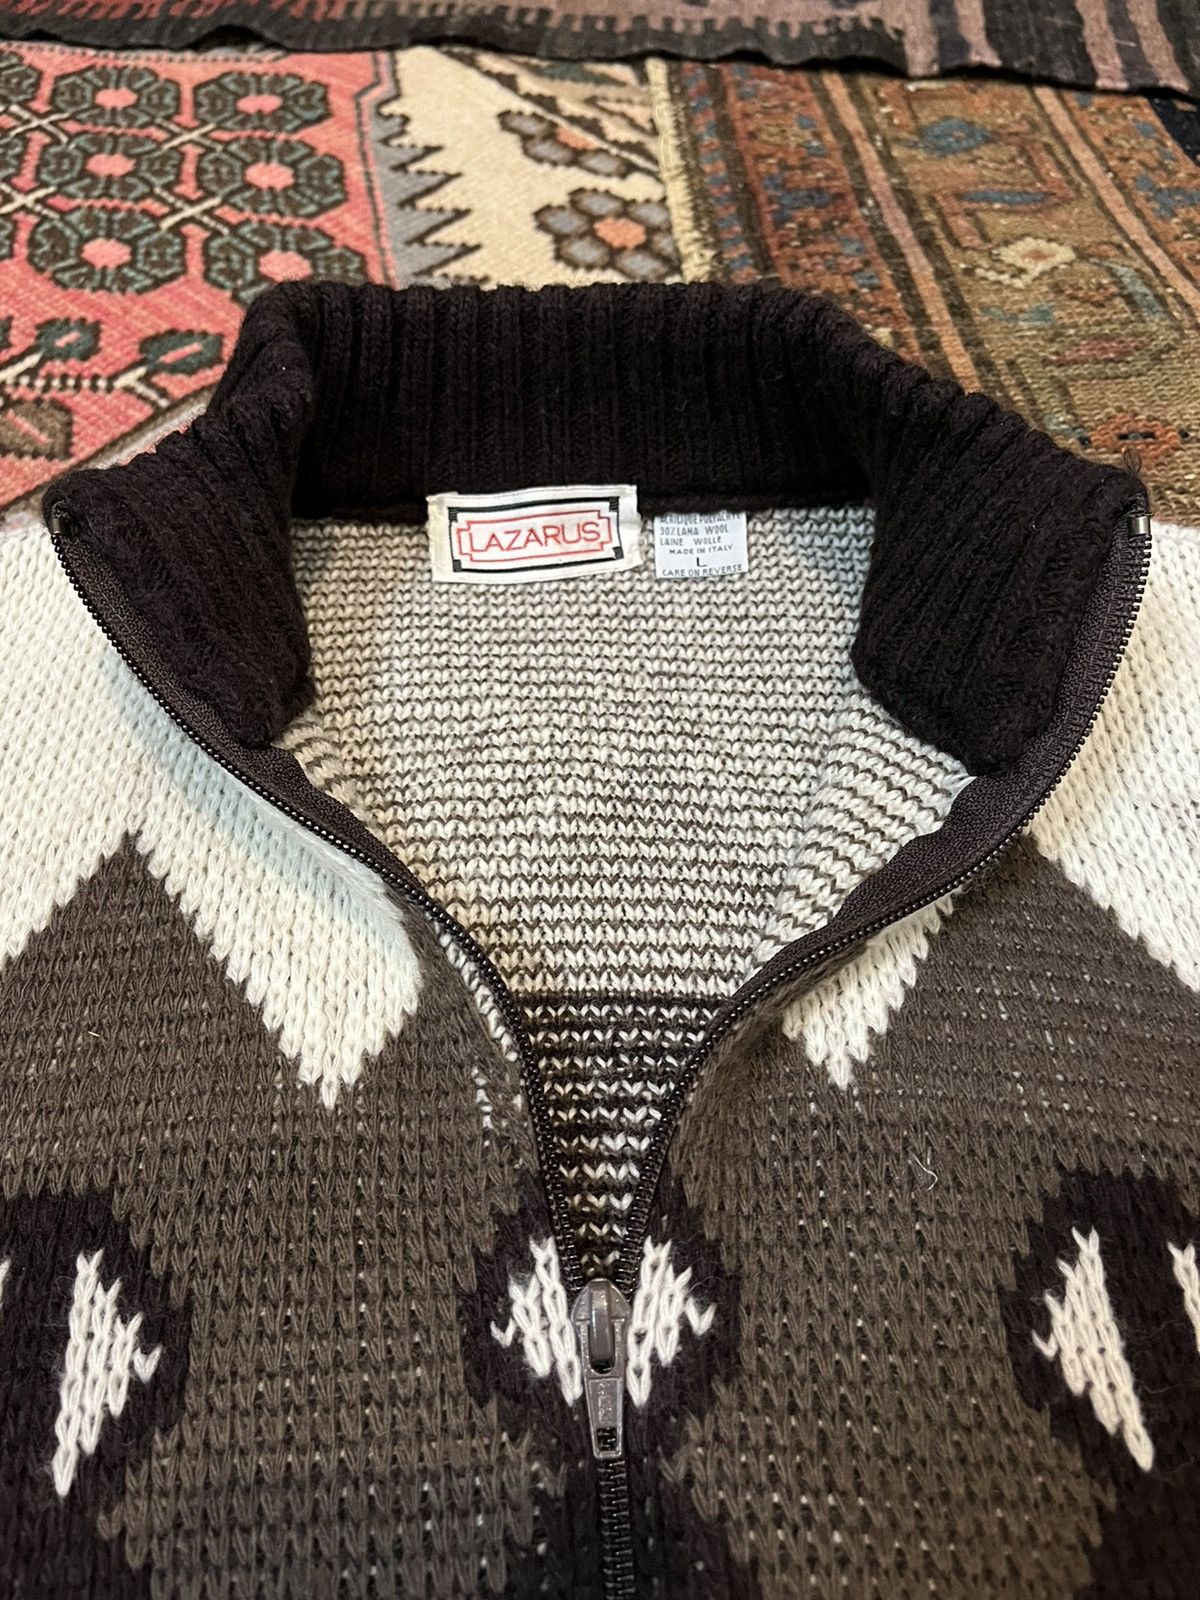 Vintage Vintage Lazarus sweater Size US L / EU 52-54 / 3 - 5 Thumbnail